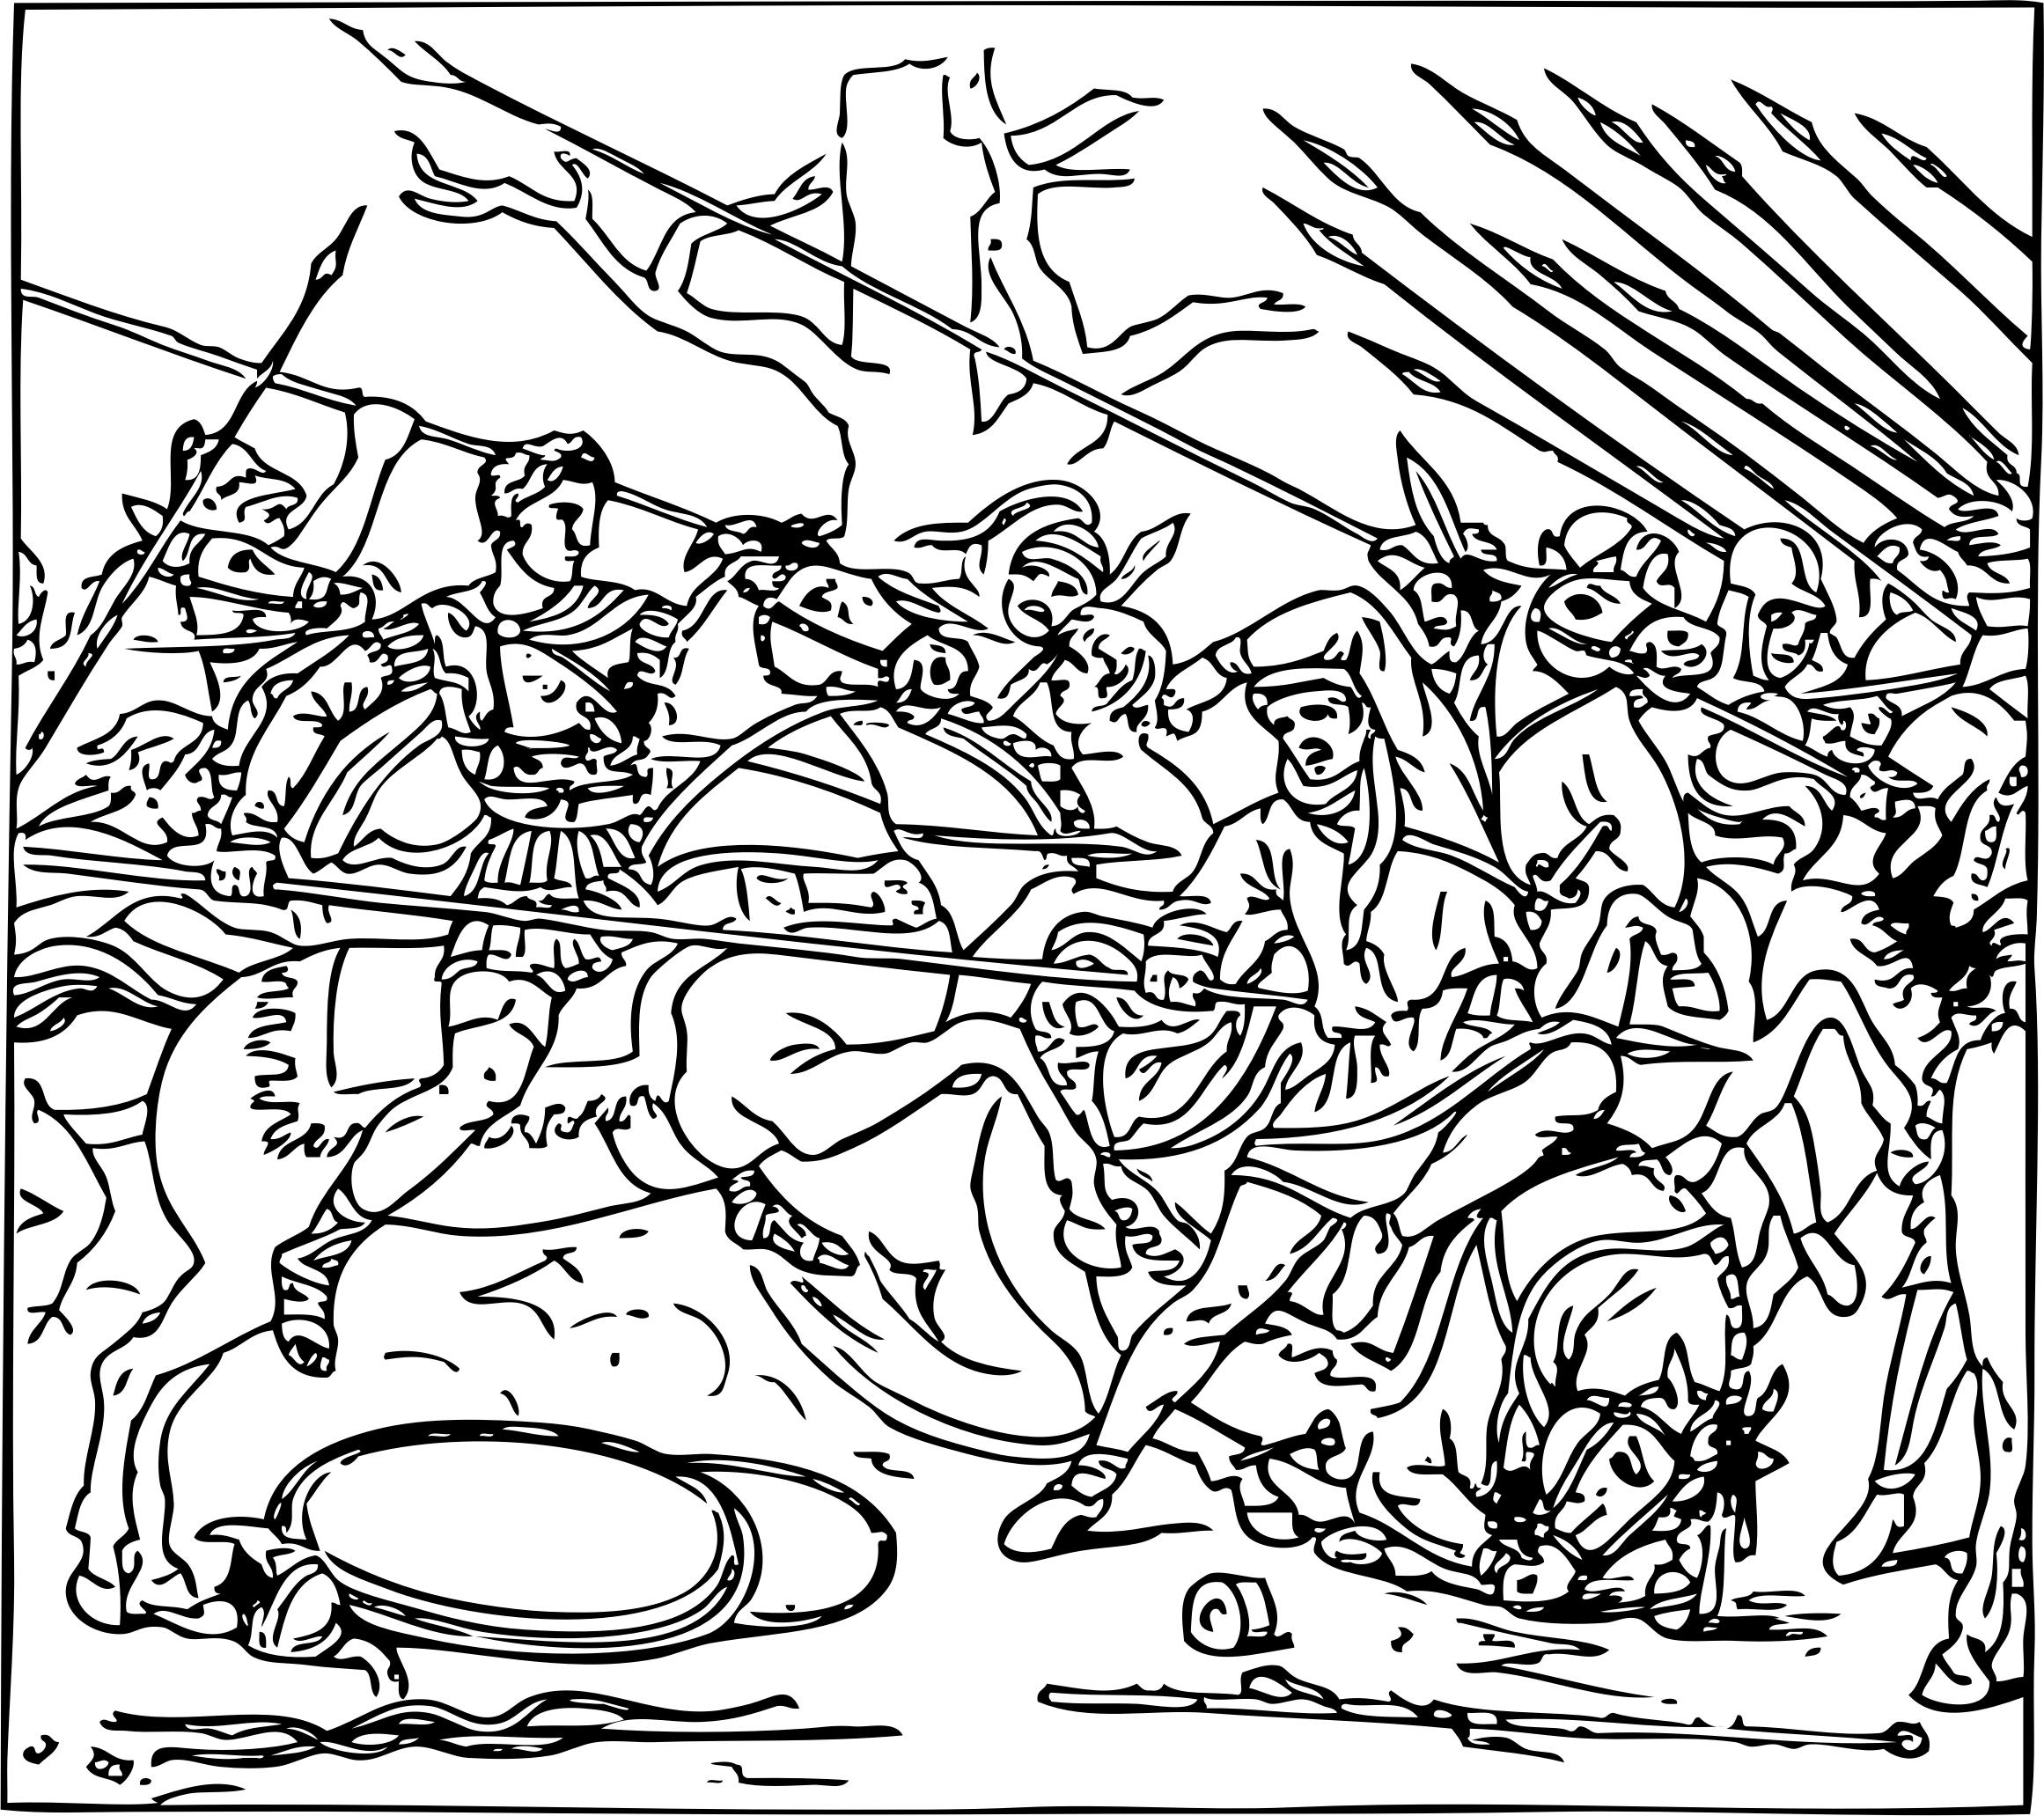 Alexander defeats the Persians png